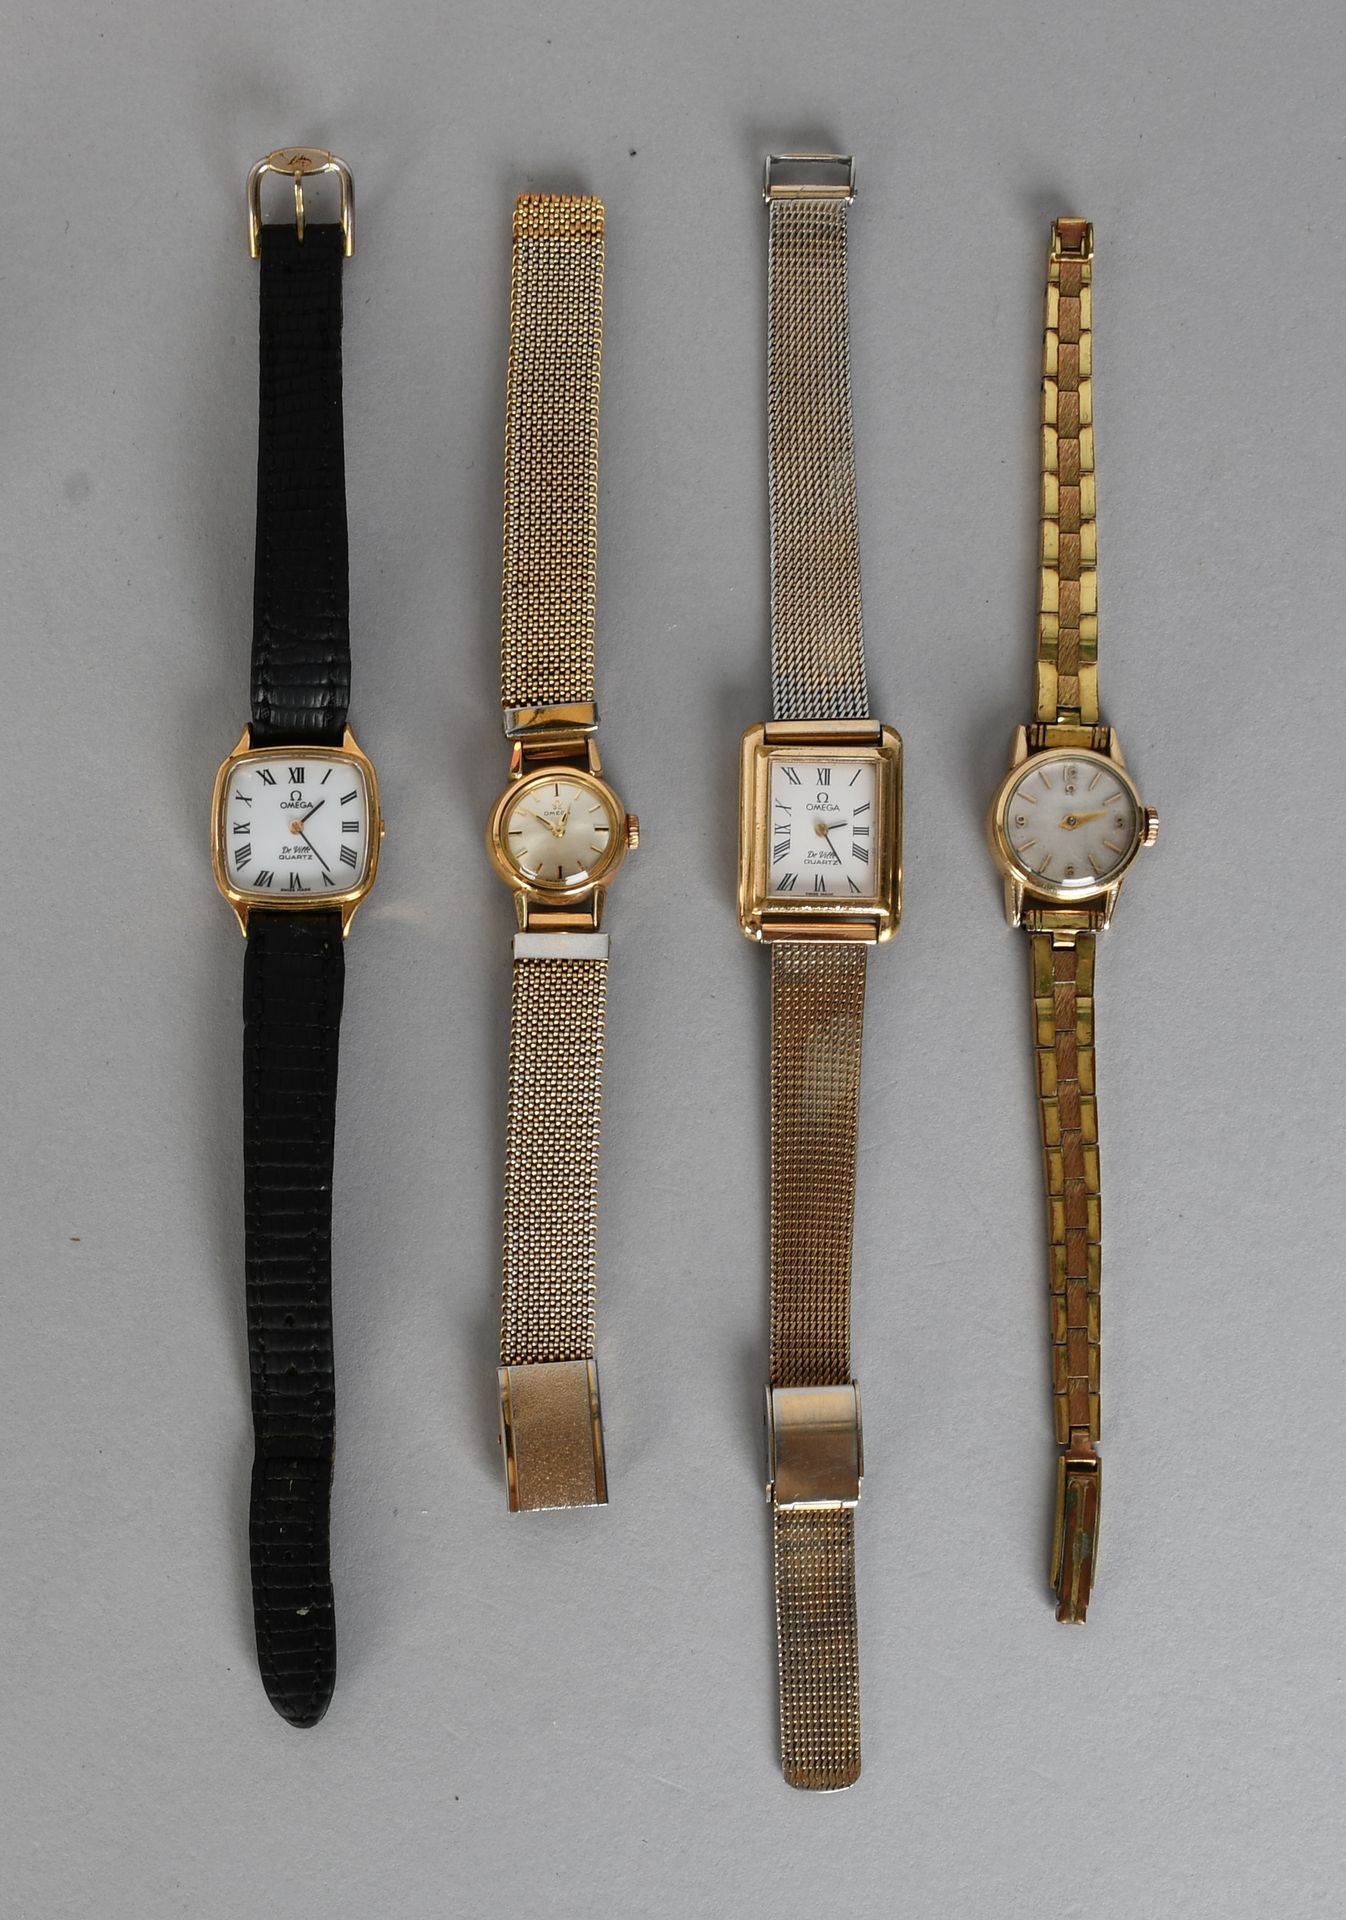 Null Gioiello

Omega - Set di quattro orologi da polso vintage.